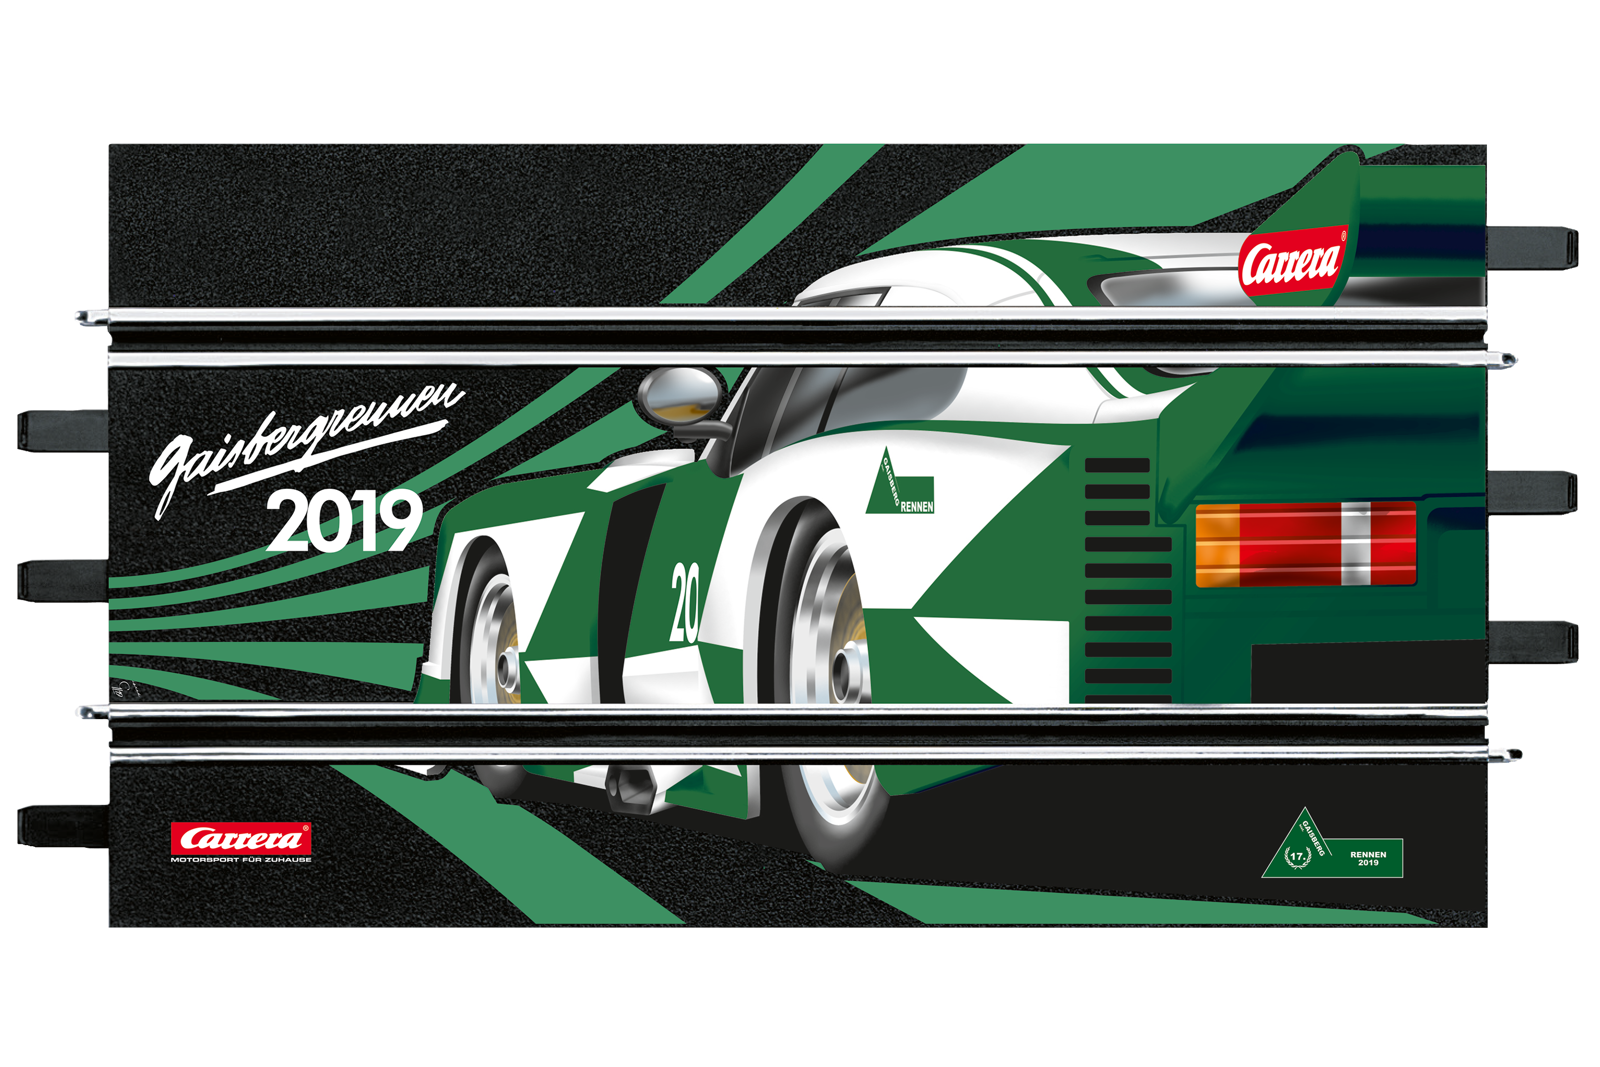 Carrera Digital 124 23889 Ford Capri Turbo Gaisberg Race 2019 